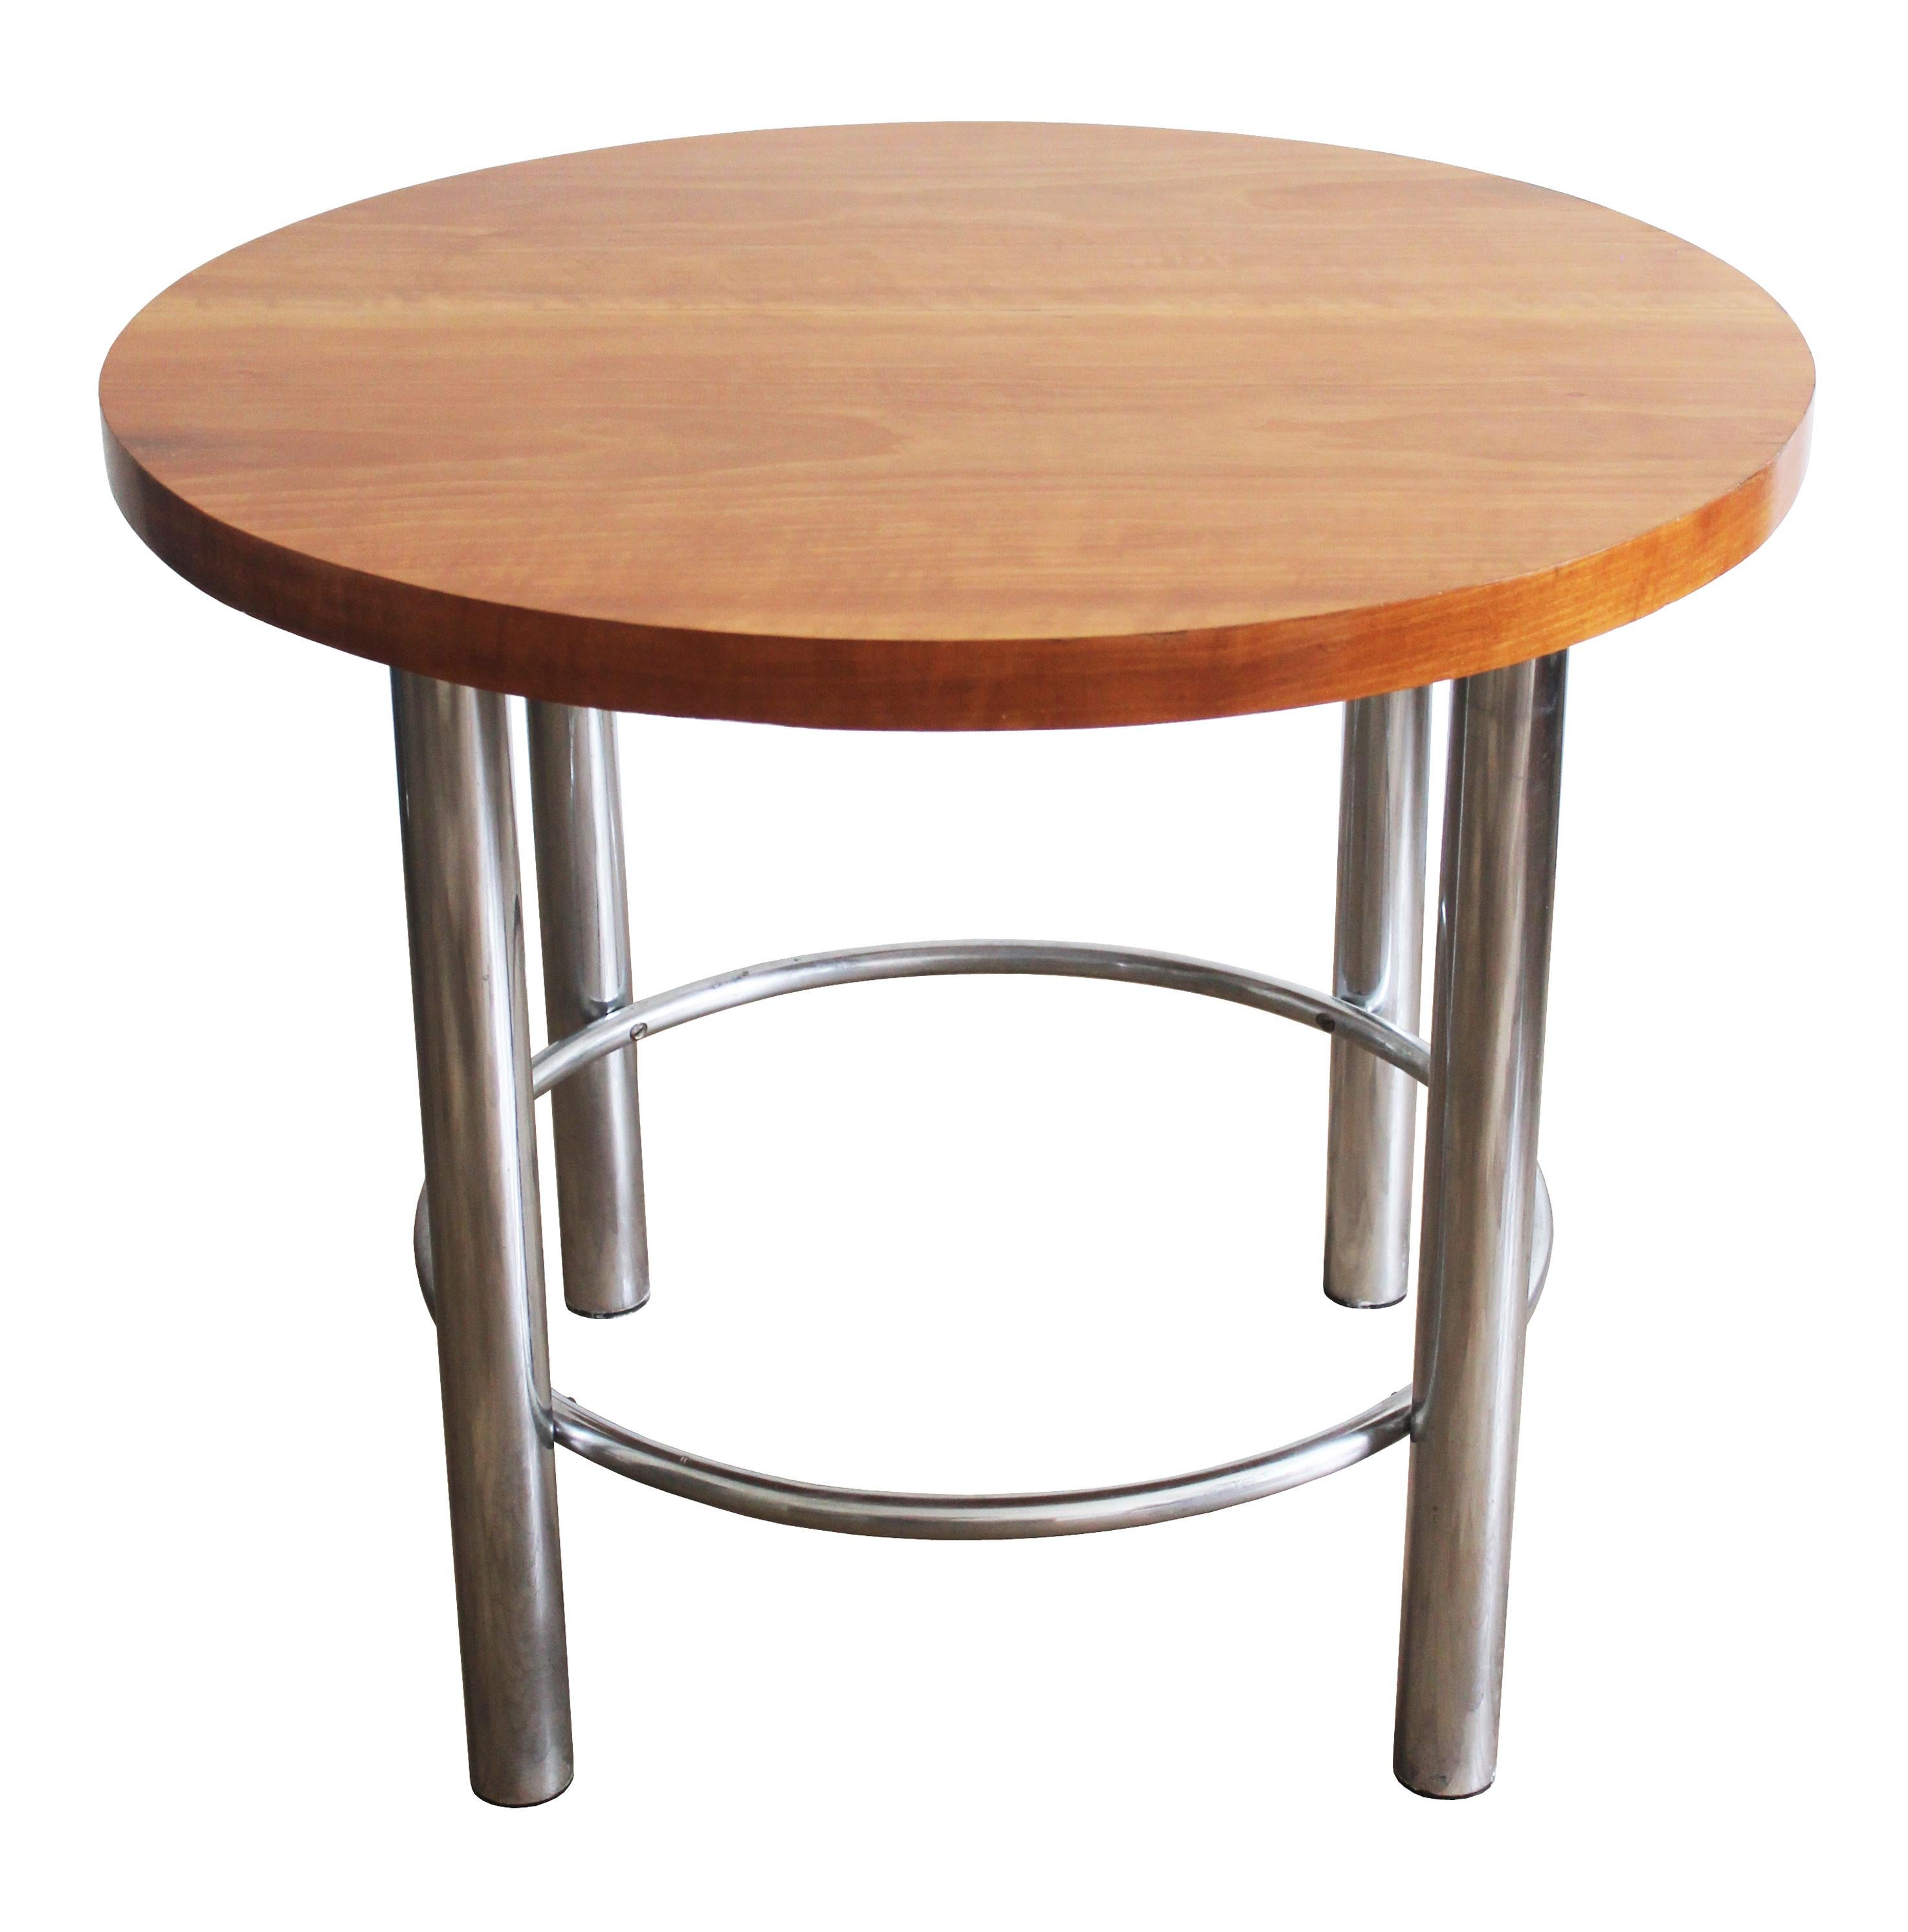 Cette table basse tubulaire moderniste a été conçue et produite dans les années 1930 par Slezak Furniture Company dans l'ancienne Tchécoslovaquie, sous le modèle ST44. À l'époque, l'esthétique radicale du Bauhaus et les visions d'un nouveau mode de